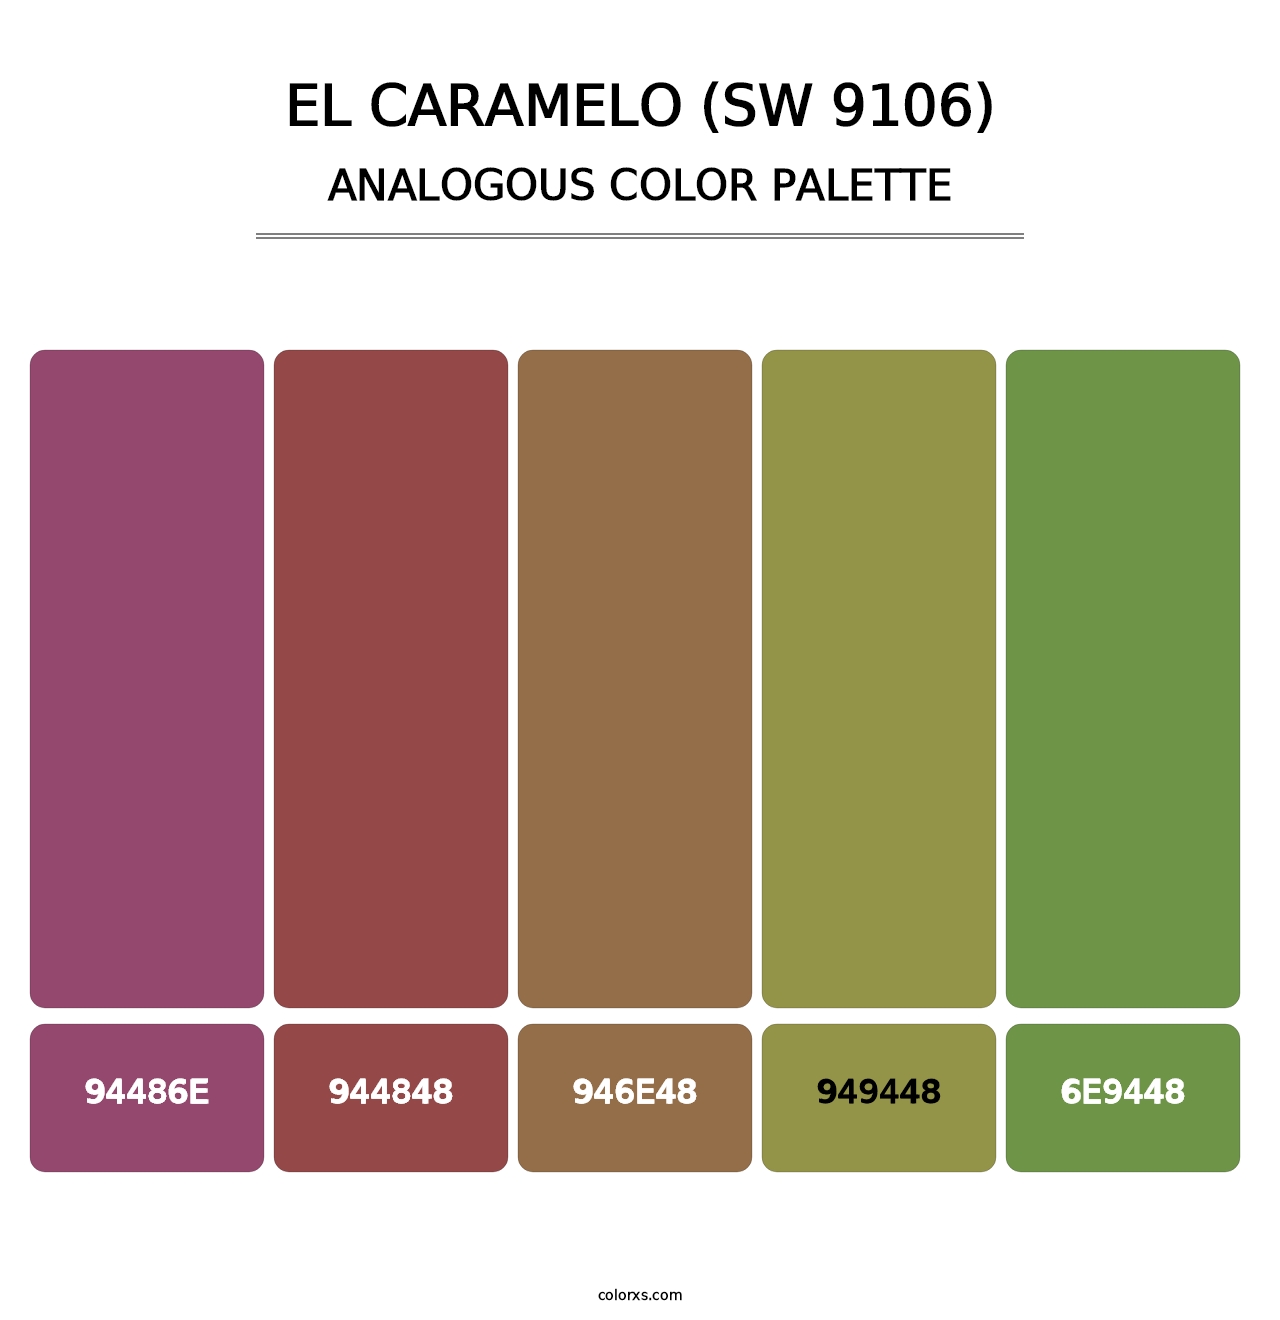 El Caramelo (SW 9106) - Analogous Color Palette